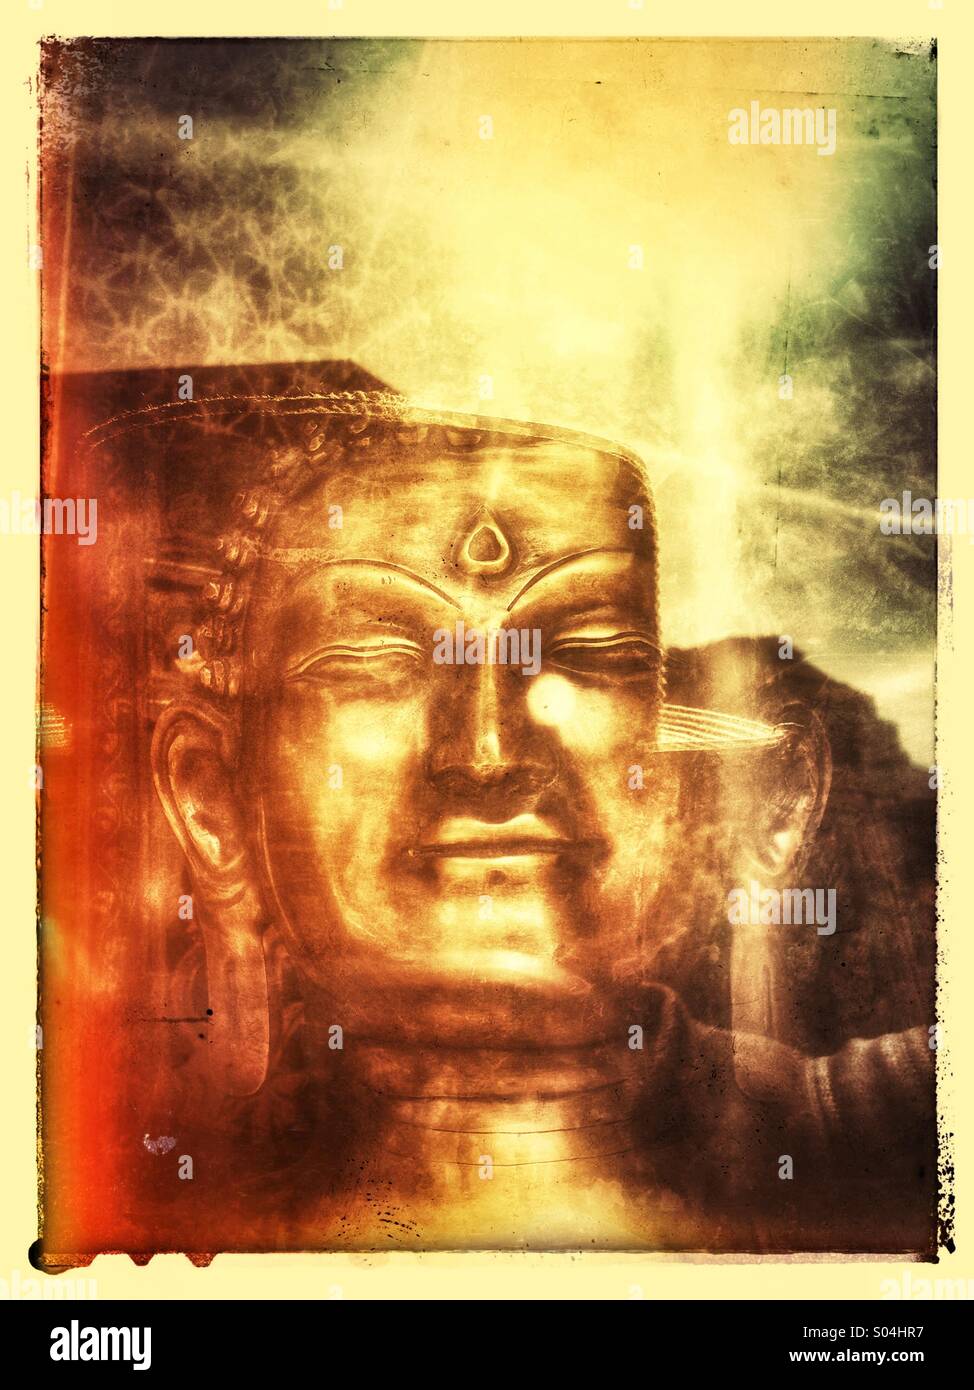 Visage de statue de Bouddha en laiton d'une fenêtre avec des réflexions Banque D'Images